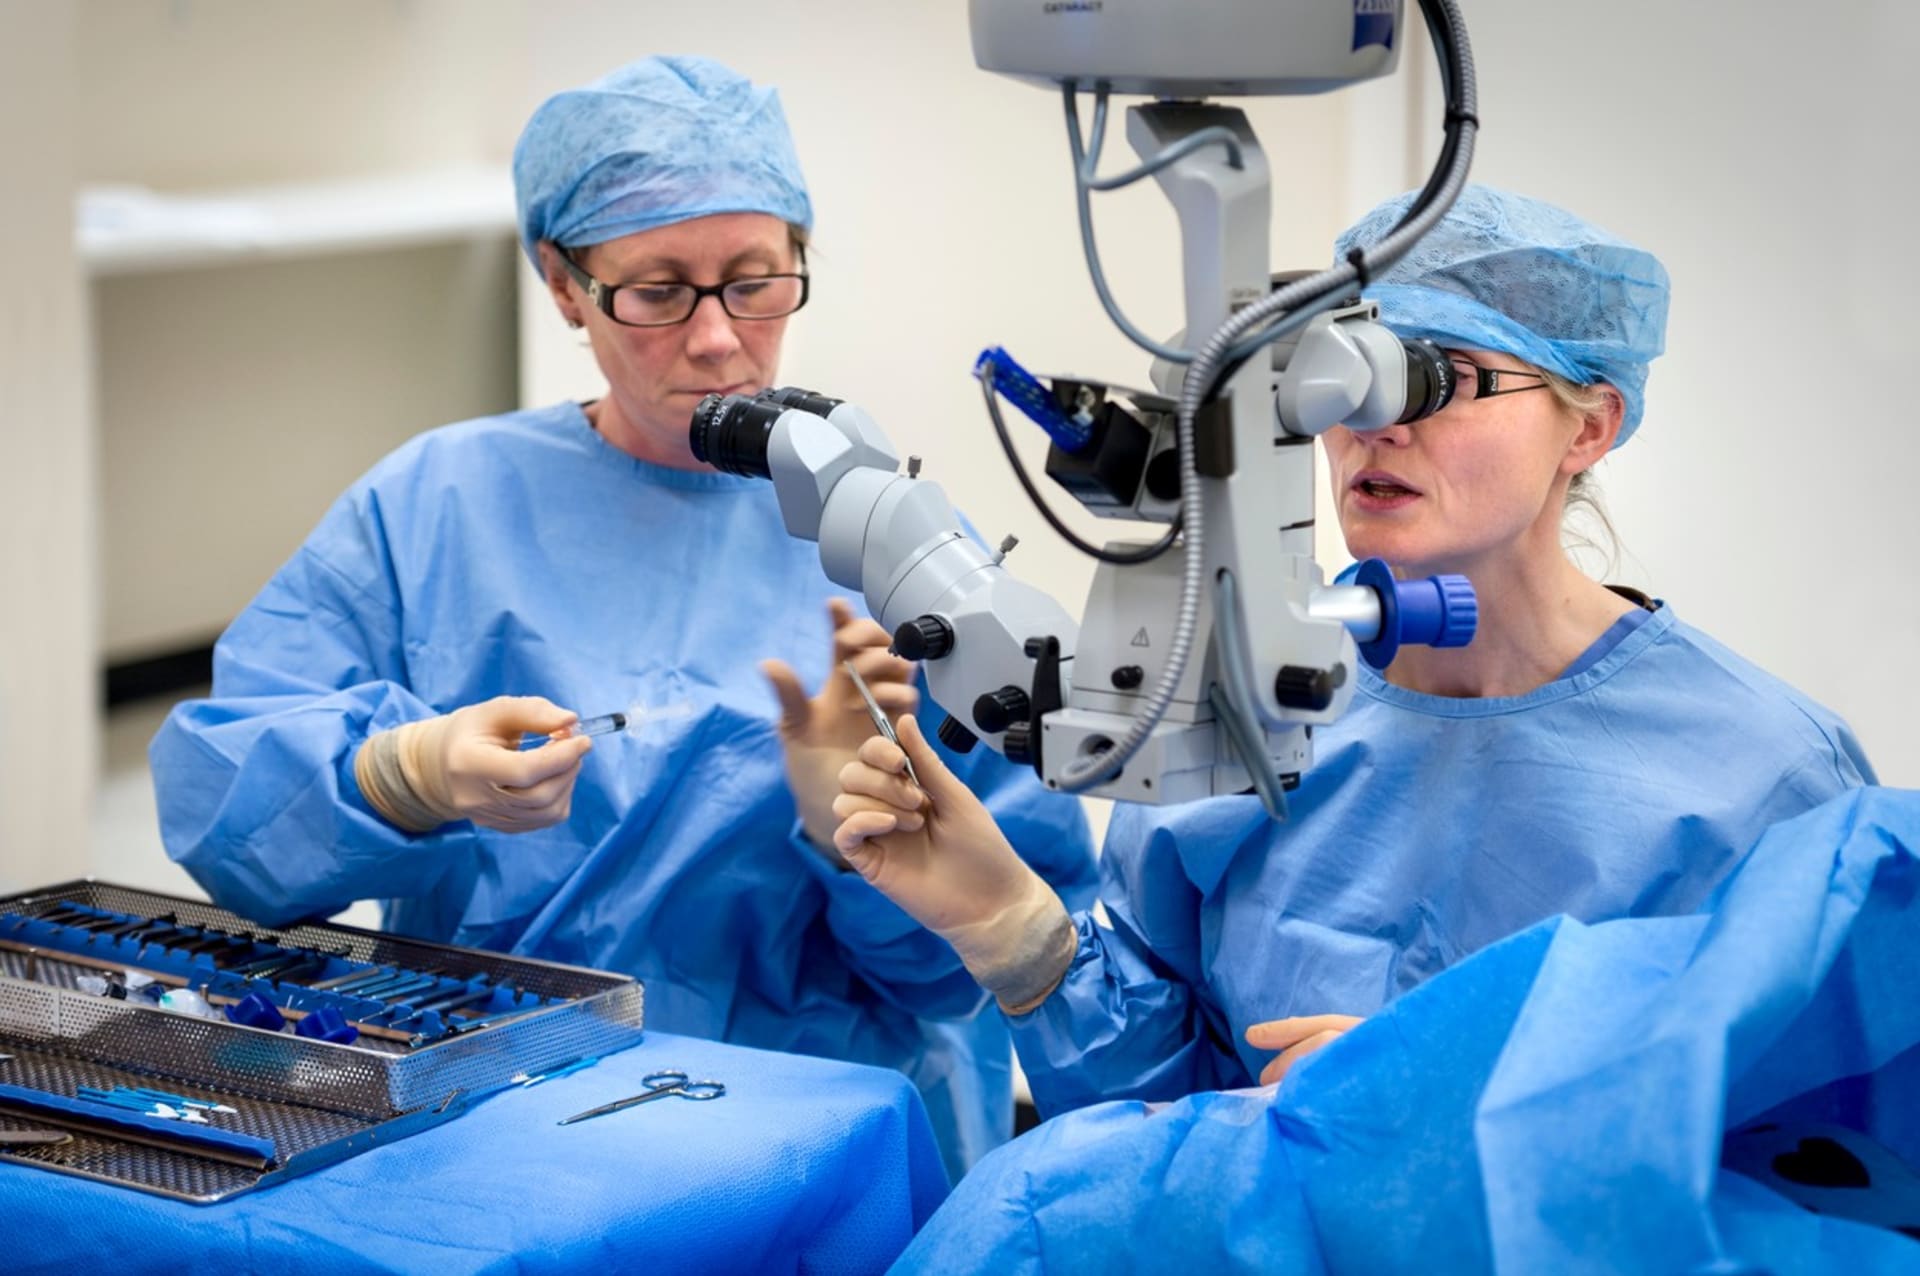 Operace oční rohovky u dětí je velice náročná a nejistá. Proto se provádí jen zřídka. (Ilustrační foto)